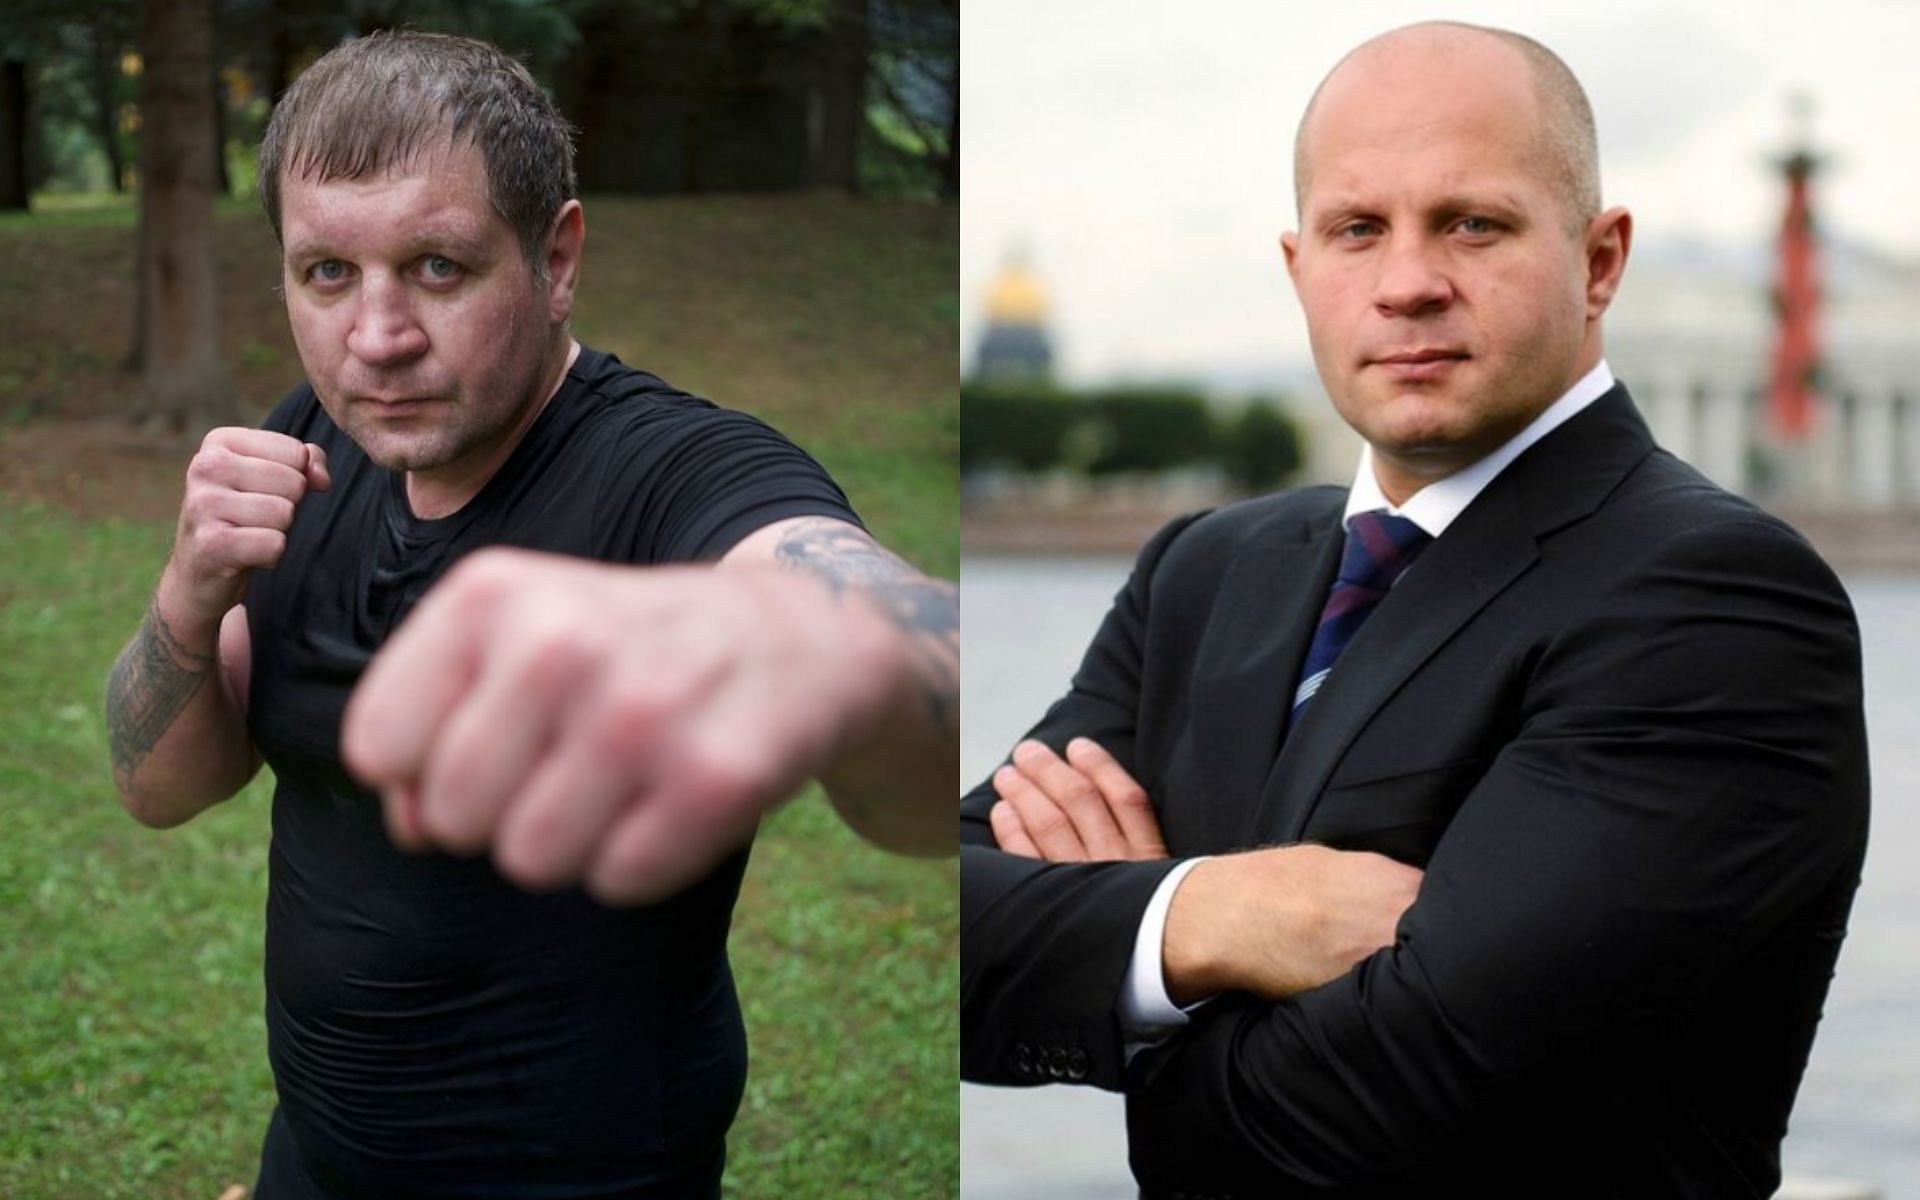 Alexander Emelianenko (left), Fedor Emelianenko (right) [Images courtesy of @alexemelyanenko and @fedoremelianenkoofficial on Instagram]